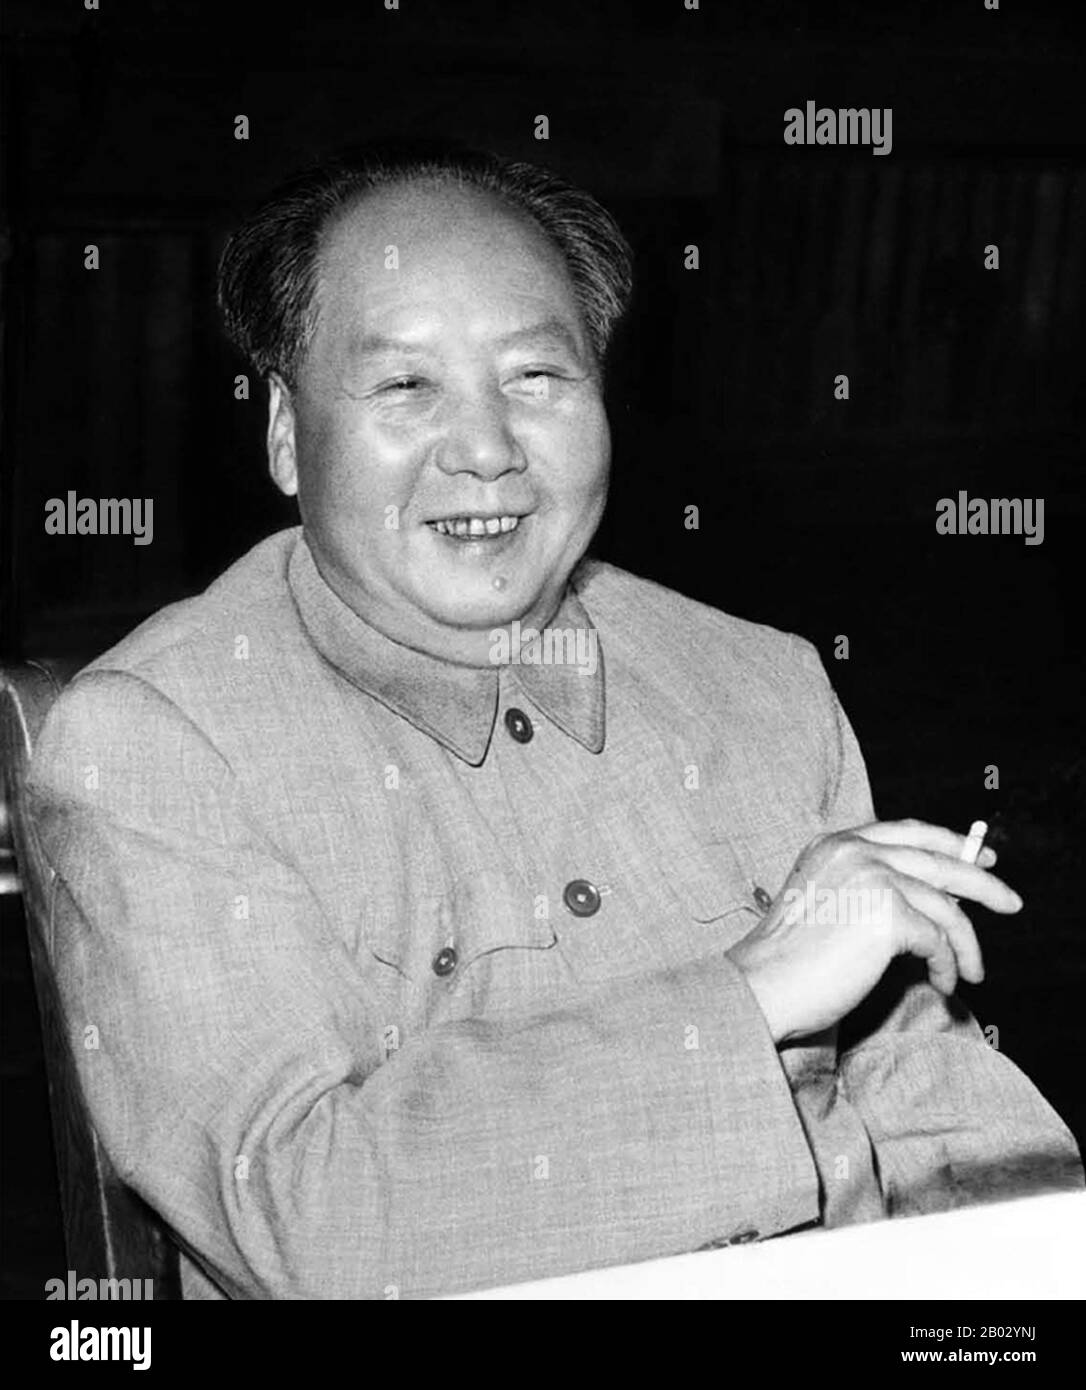 Mao Zedong, également translittéré comme Mao Tse-tung (26 décembre 1893 – 9 septembre 1976), était un révolutionnaire communiste chinois, un stratège de guérilla, un auteur, un théoricien politique et un chef de la Révolution chinoise. Communément appelé Président Mao, il était l'architecte de la République Populaire de Chine (RPC) depuis sa création en 1949 et il a exercé un contrôle autoritaire sur la nation jusqu'à sa mort en 1976. Sa contribution théorique au marxisme-léninisme, ainsi que ses stratégies militaires et sa marque de politiques politiques, sont maintenant collectivement connues sous le nom de maoïsme. Banque D'Images